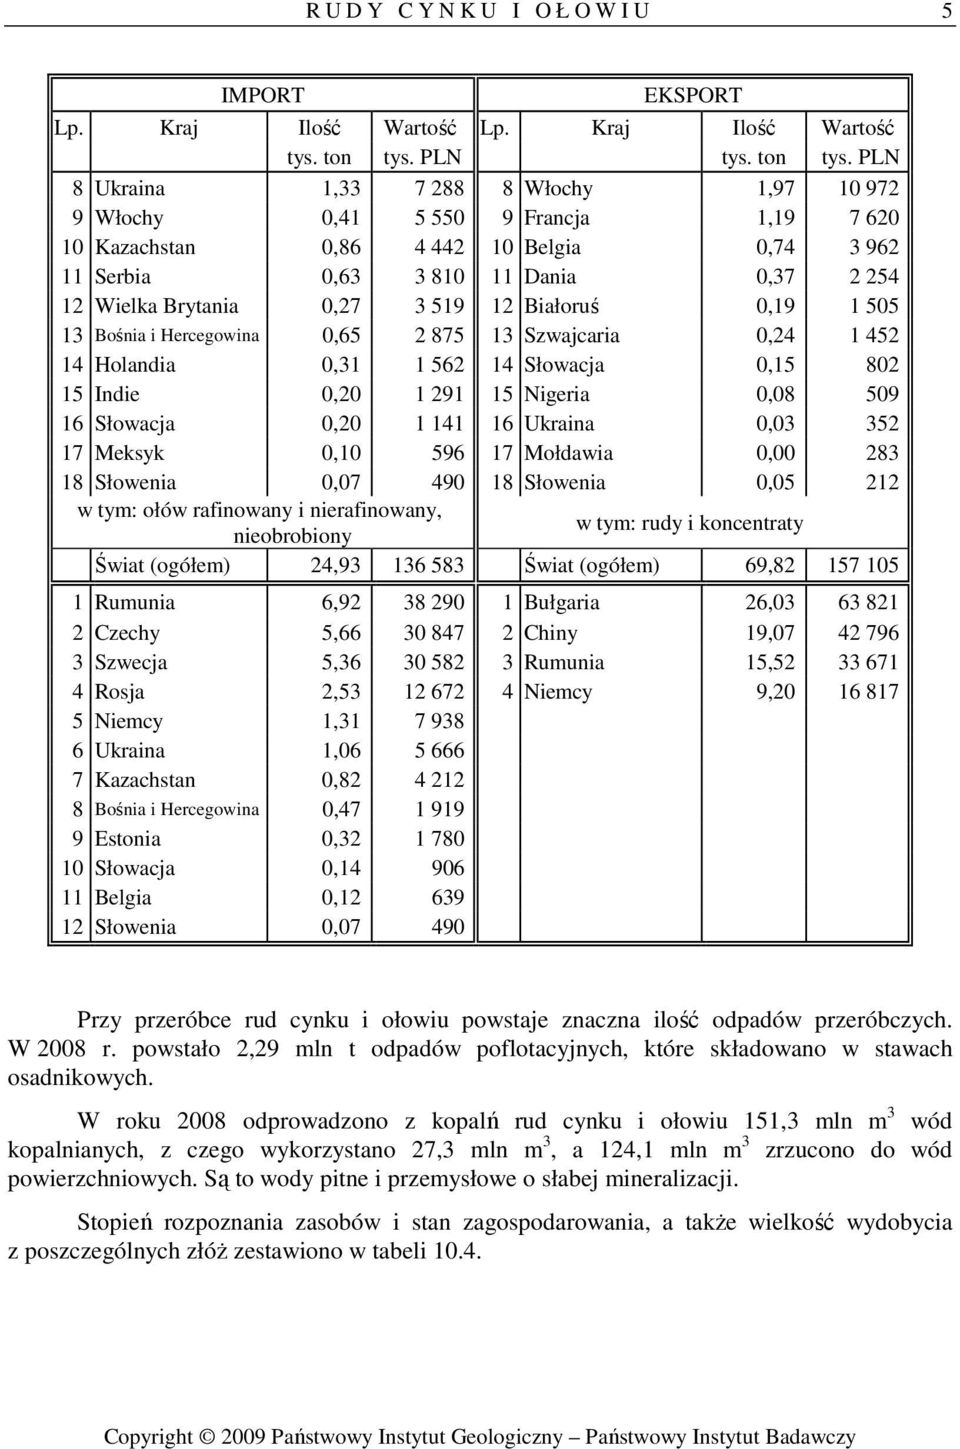 Ukraina 0,03 352 17 Meksyk 0,10 596 17 Mołdawia 0,00 283 18 Słowenia 0,07 490 18 Słowenia 0,05 212 w tym: ołów rafinowany i nierafinowany, nieobrobiony w tym: rudy i koncentraty Świat (ogółem) 24,93